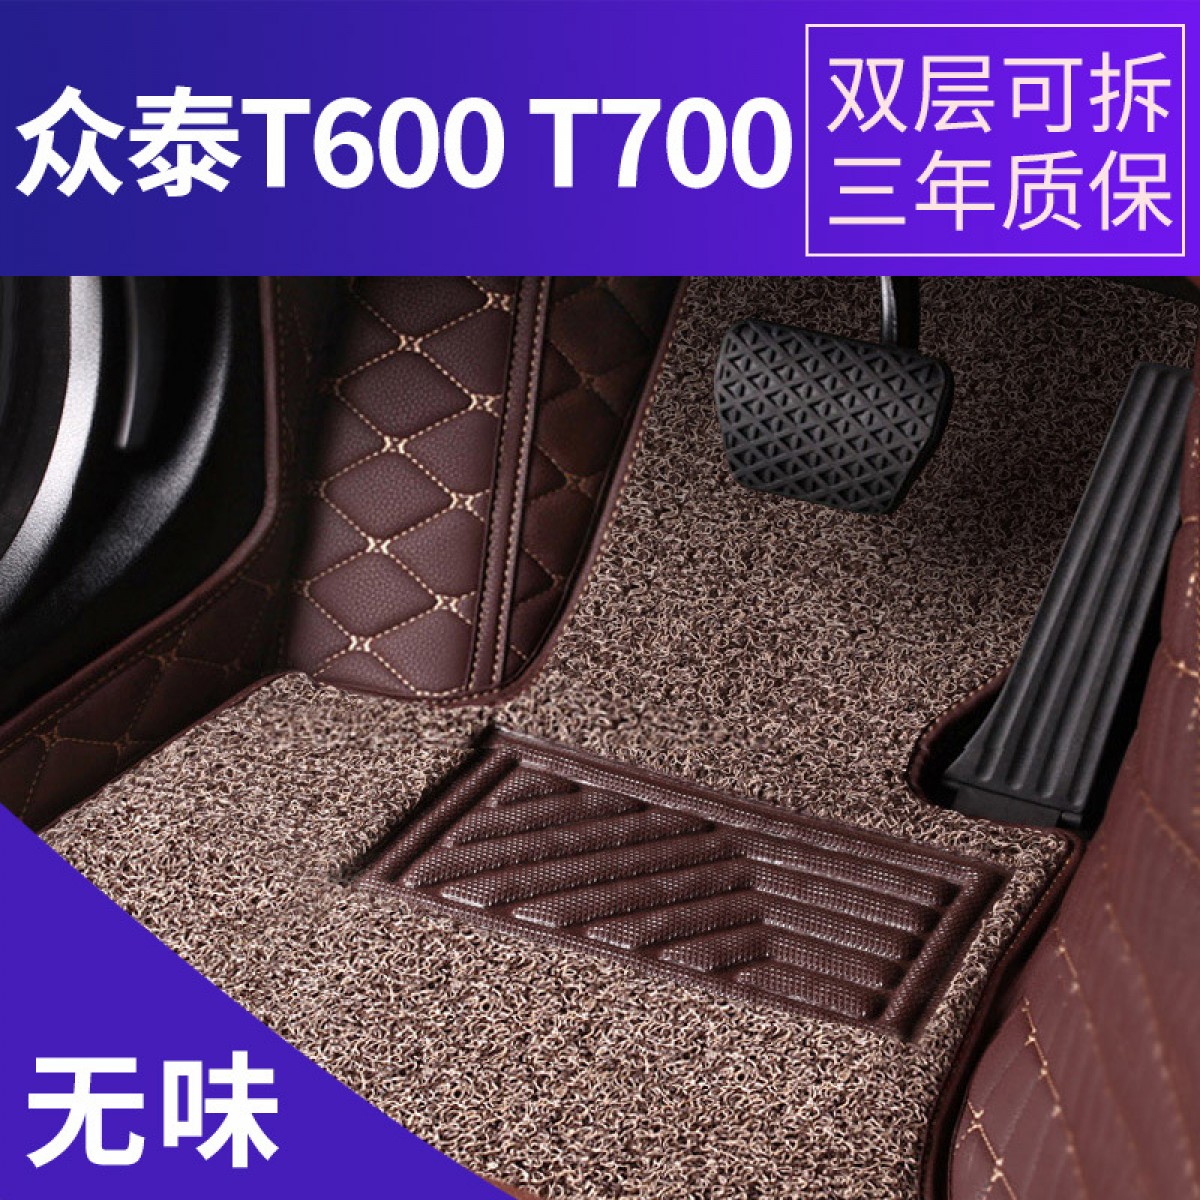 众泰T700T600全包围汽车脚垫专车专用双层丝圈皮革脚垫